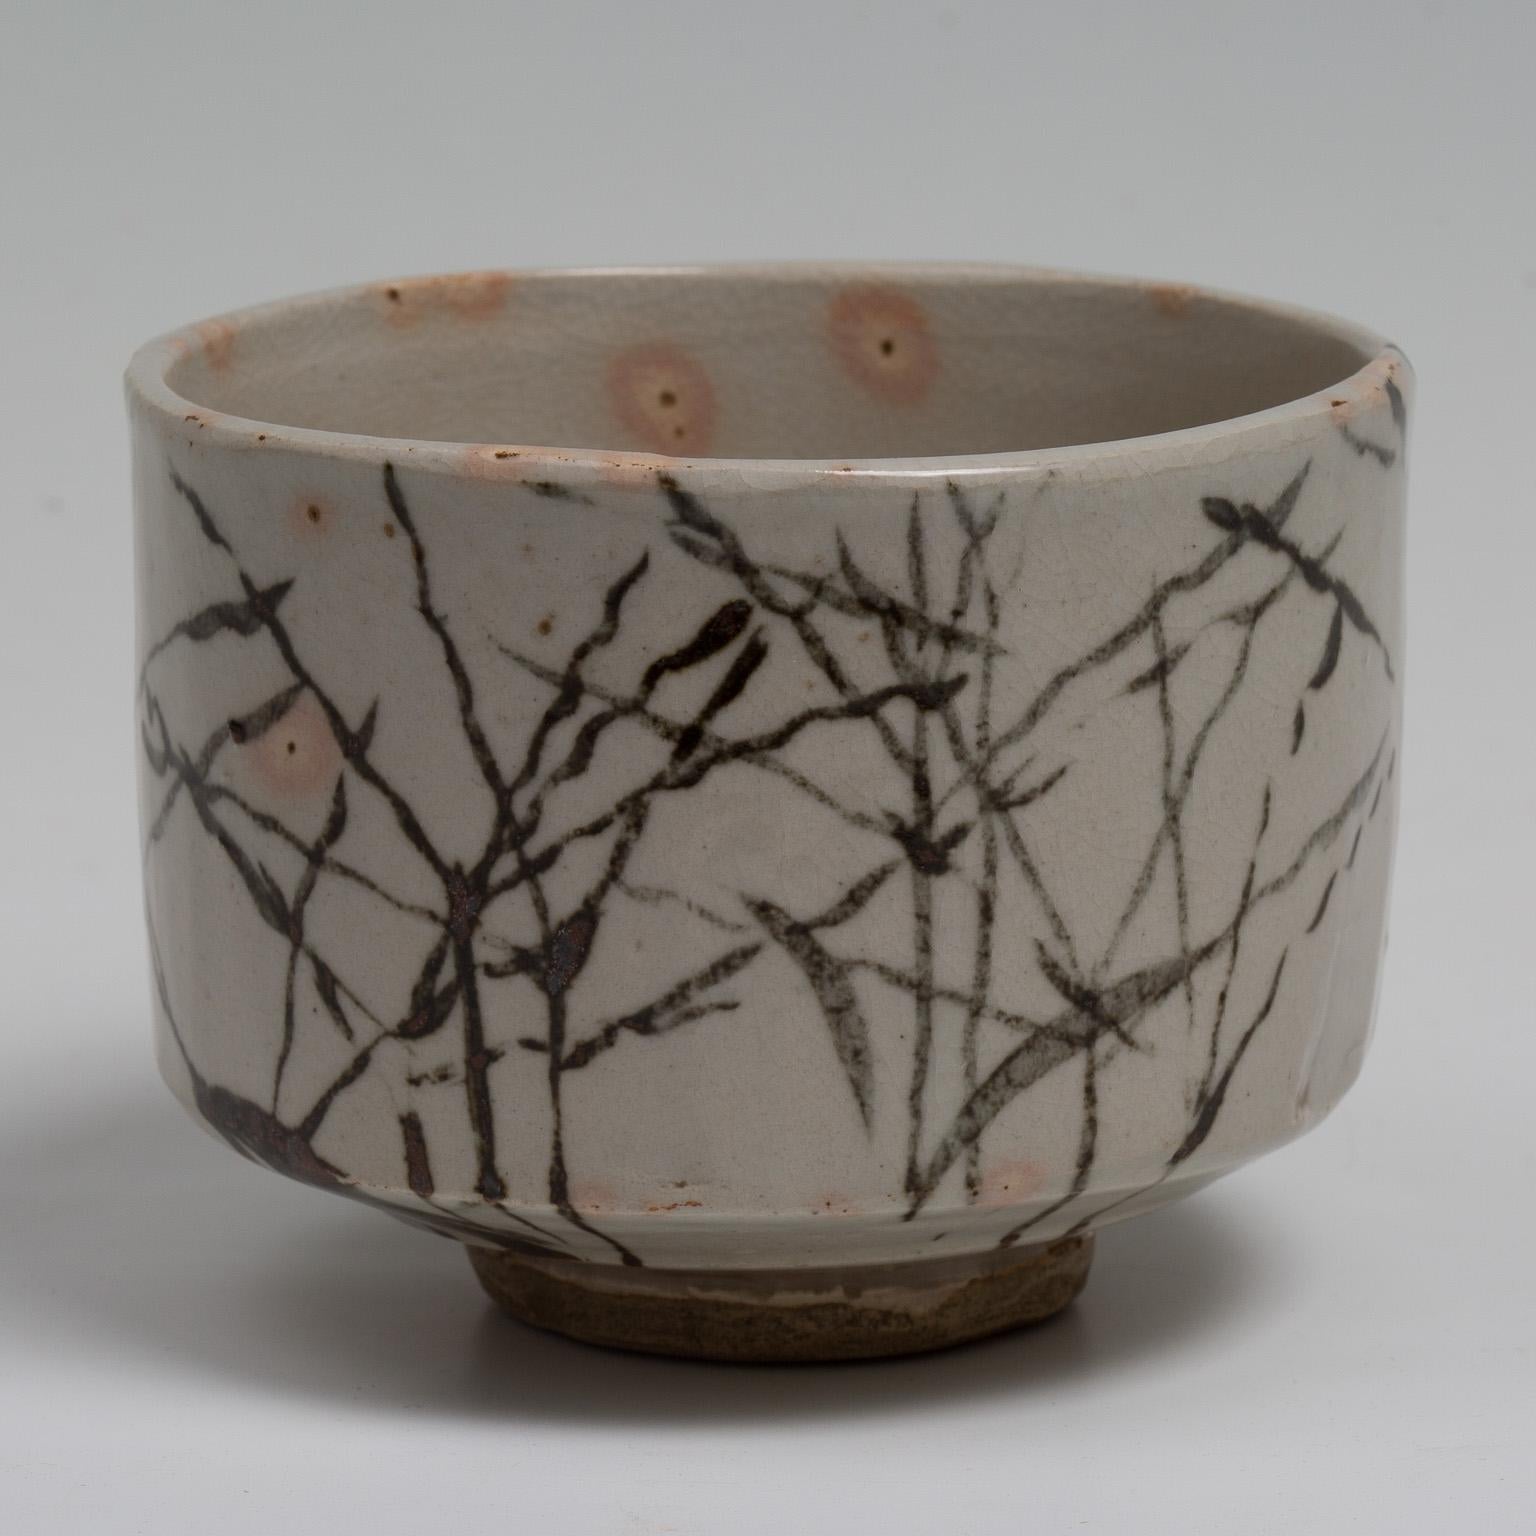 Un bol à thé en céramique décoré d'herbes d'automne avec tomobako signé et scellé.
Peintre et designer, Kamisaka Sekka est l'un des plus importants artistes japonais à avoir introduit l'esthétique traditionnelle dans le monde occidental. Issu d'une